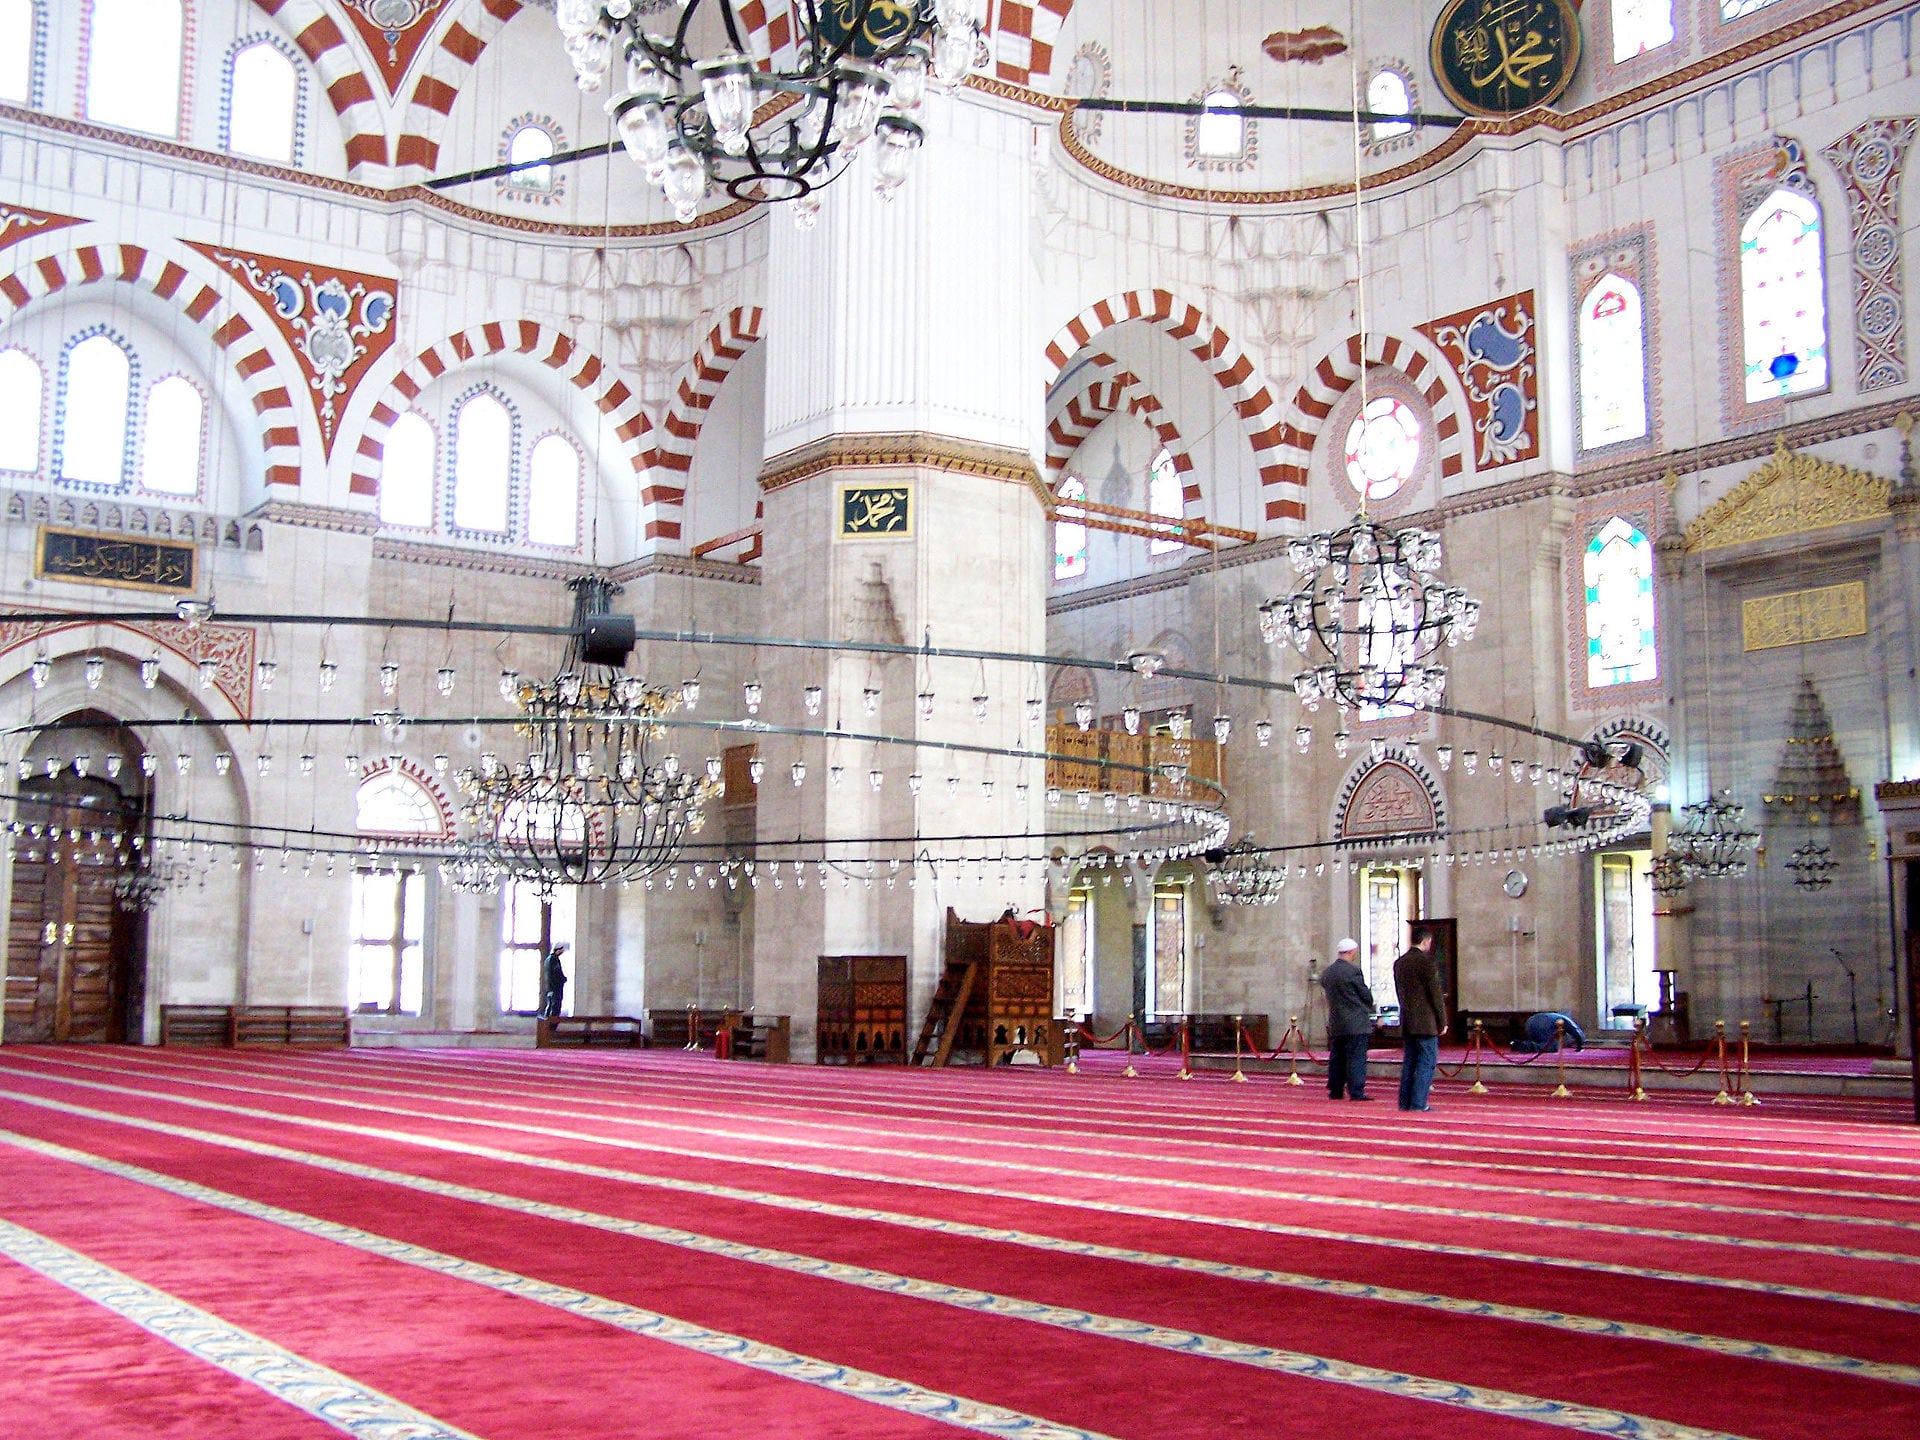 inside the Şehzade Mosque